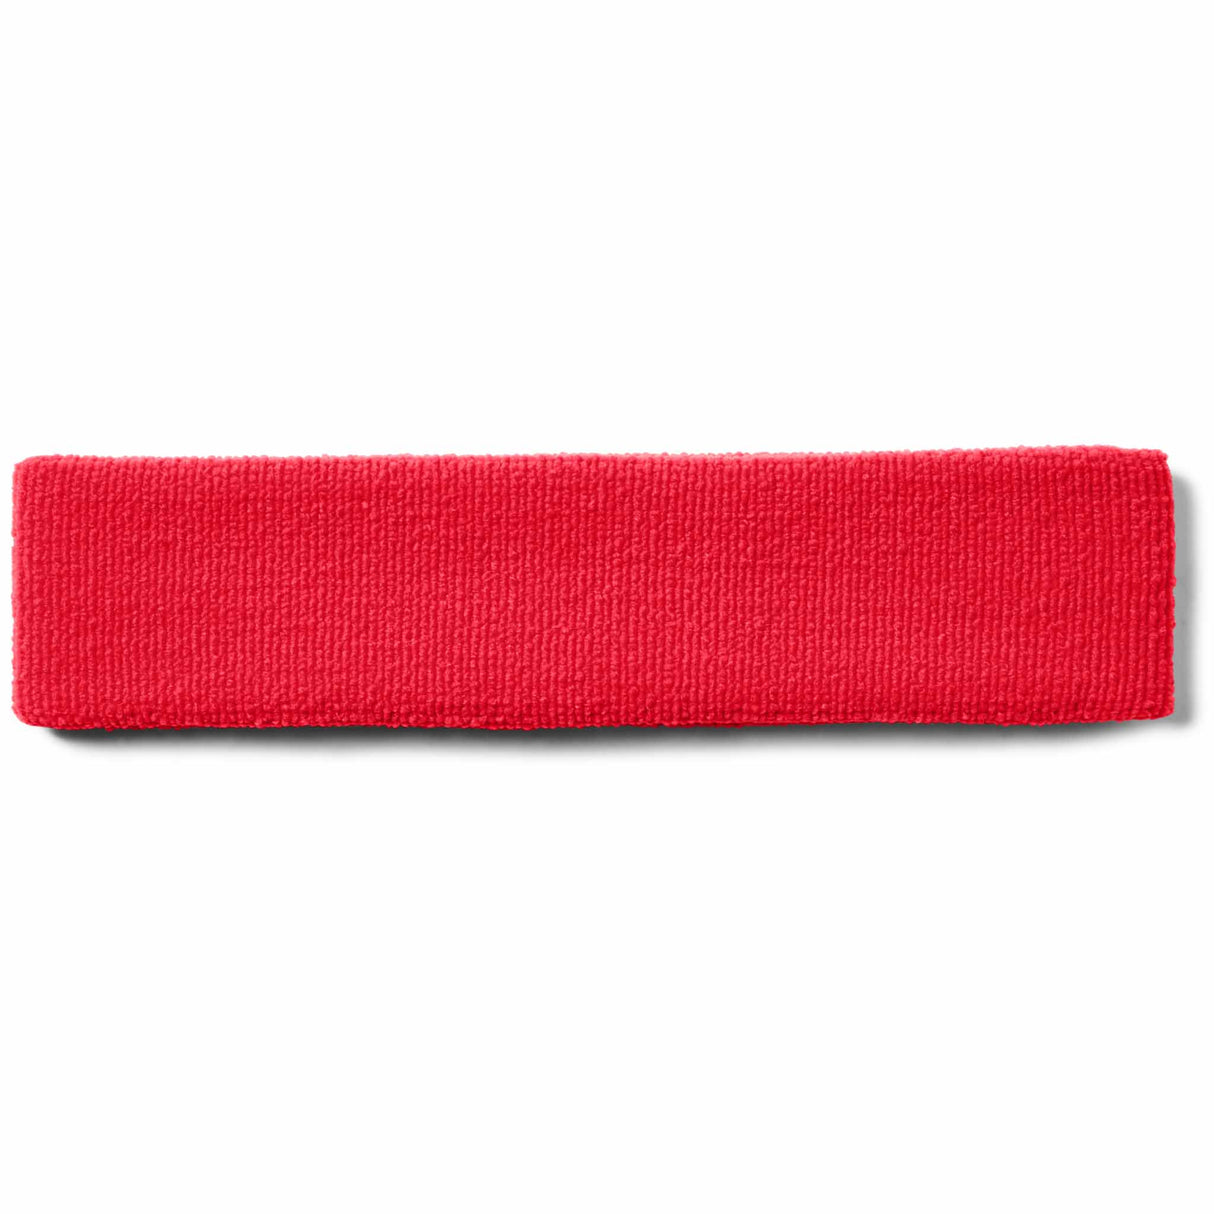 UA Performance bandeaux de tête unisexe dos- rouge / blanc